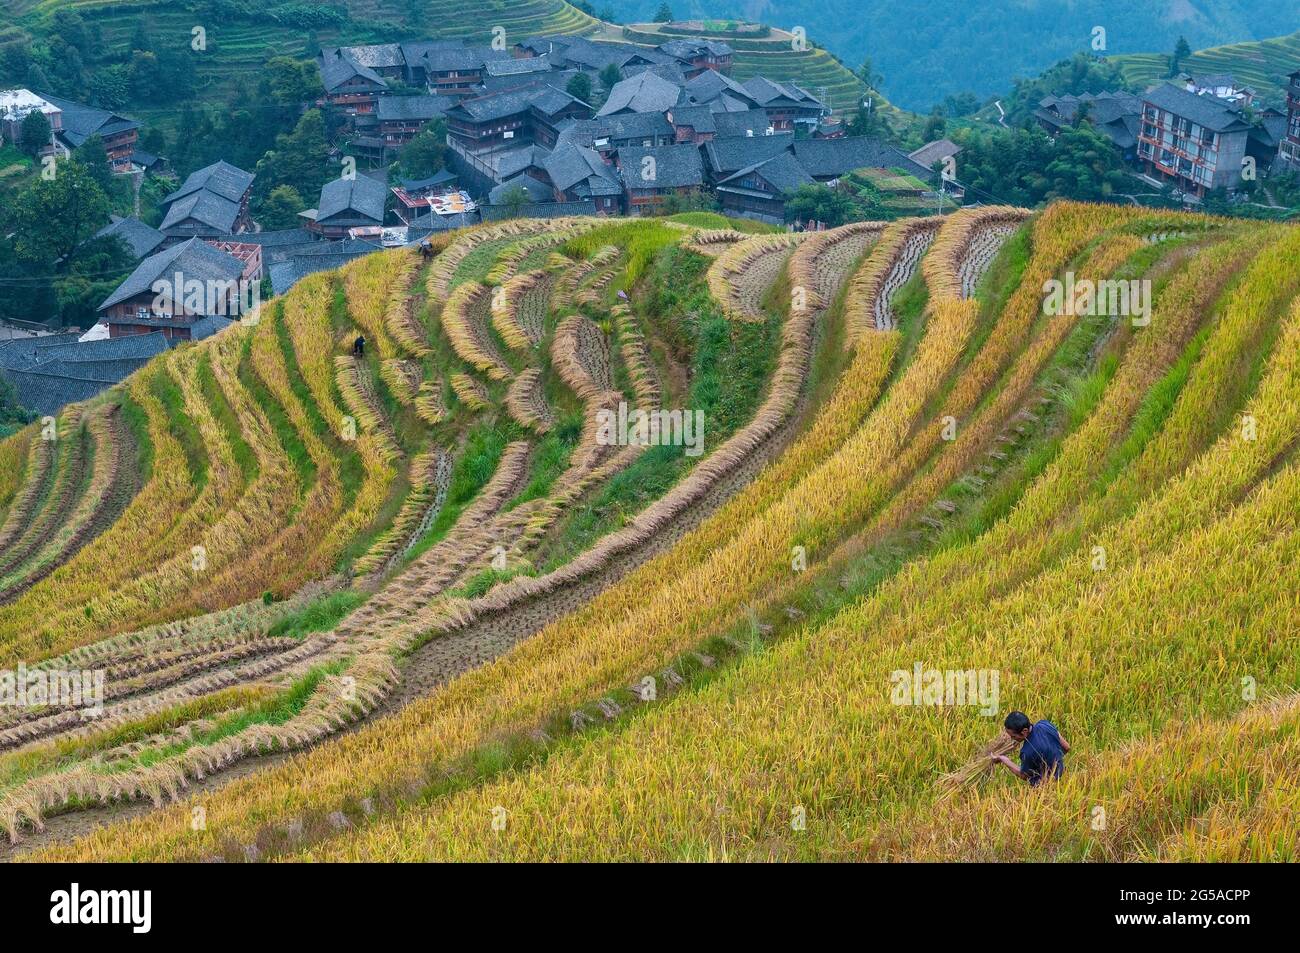 L'uomo cinese della tribù indigena delle colline di Zhuang che taglia piante di riso nella raccolta del riso a Longsheng Ping un villaggio risaie a terrazze, provincia di Guangxi, Cina. Foto Stock